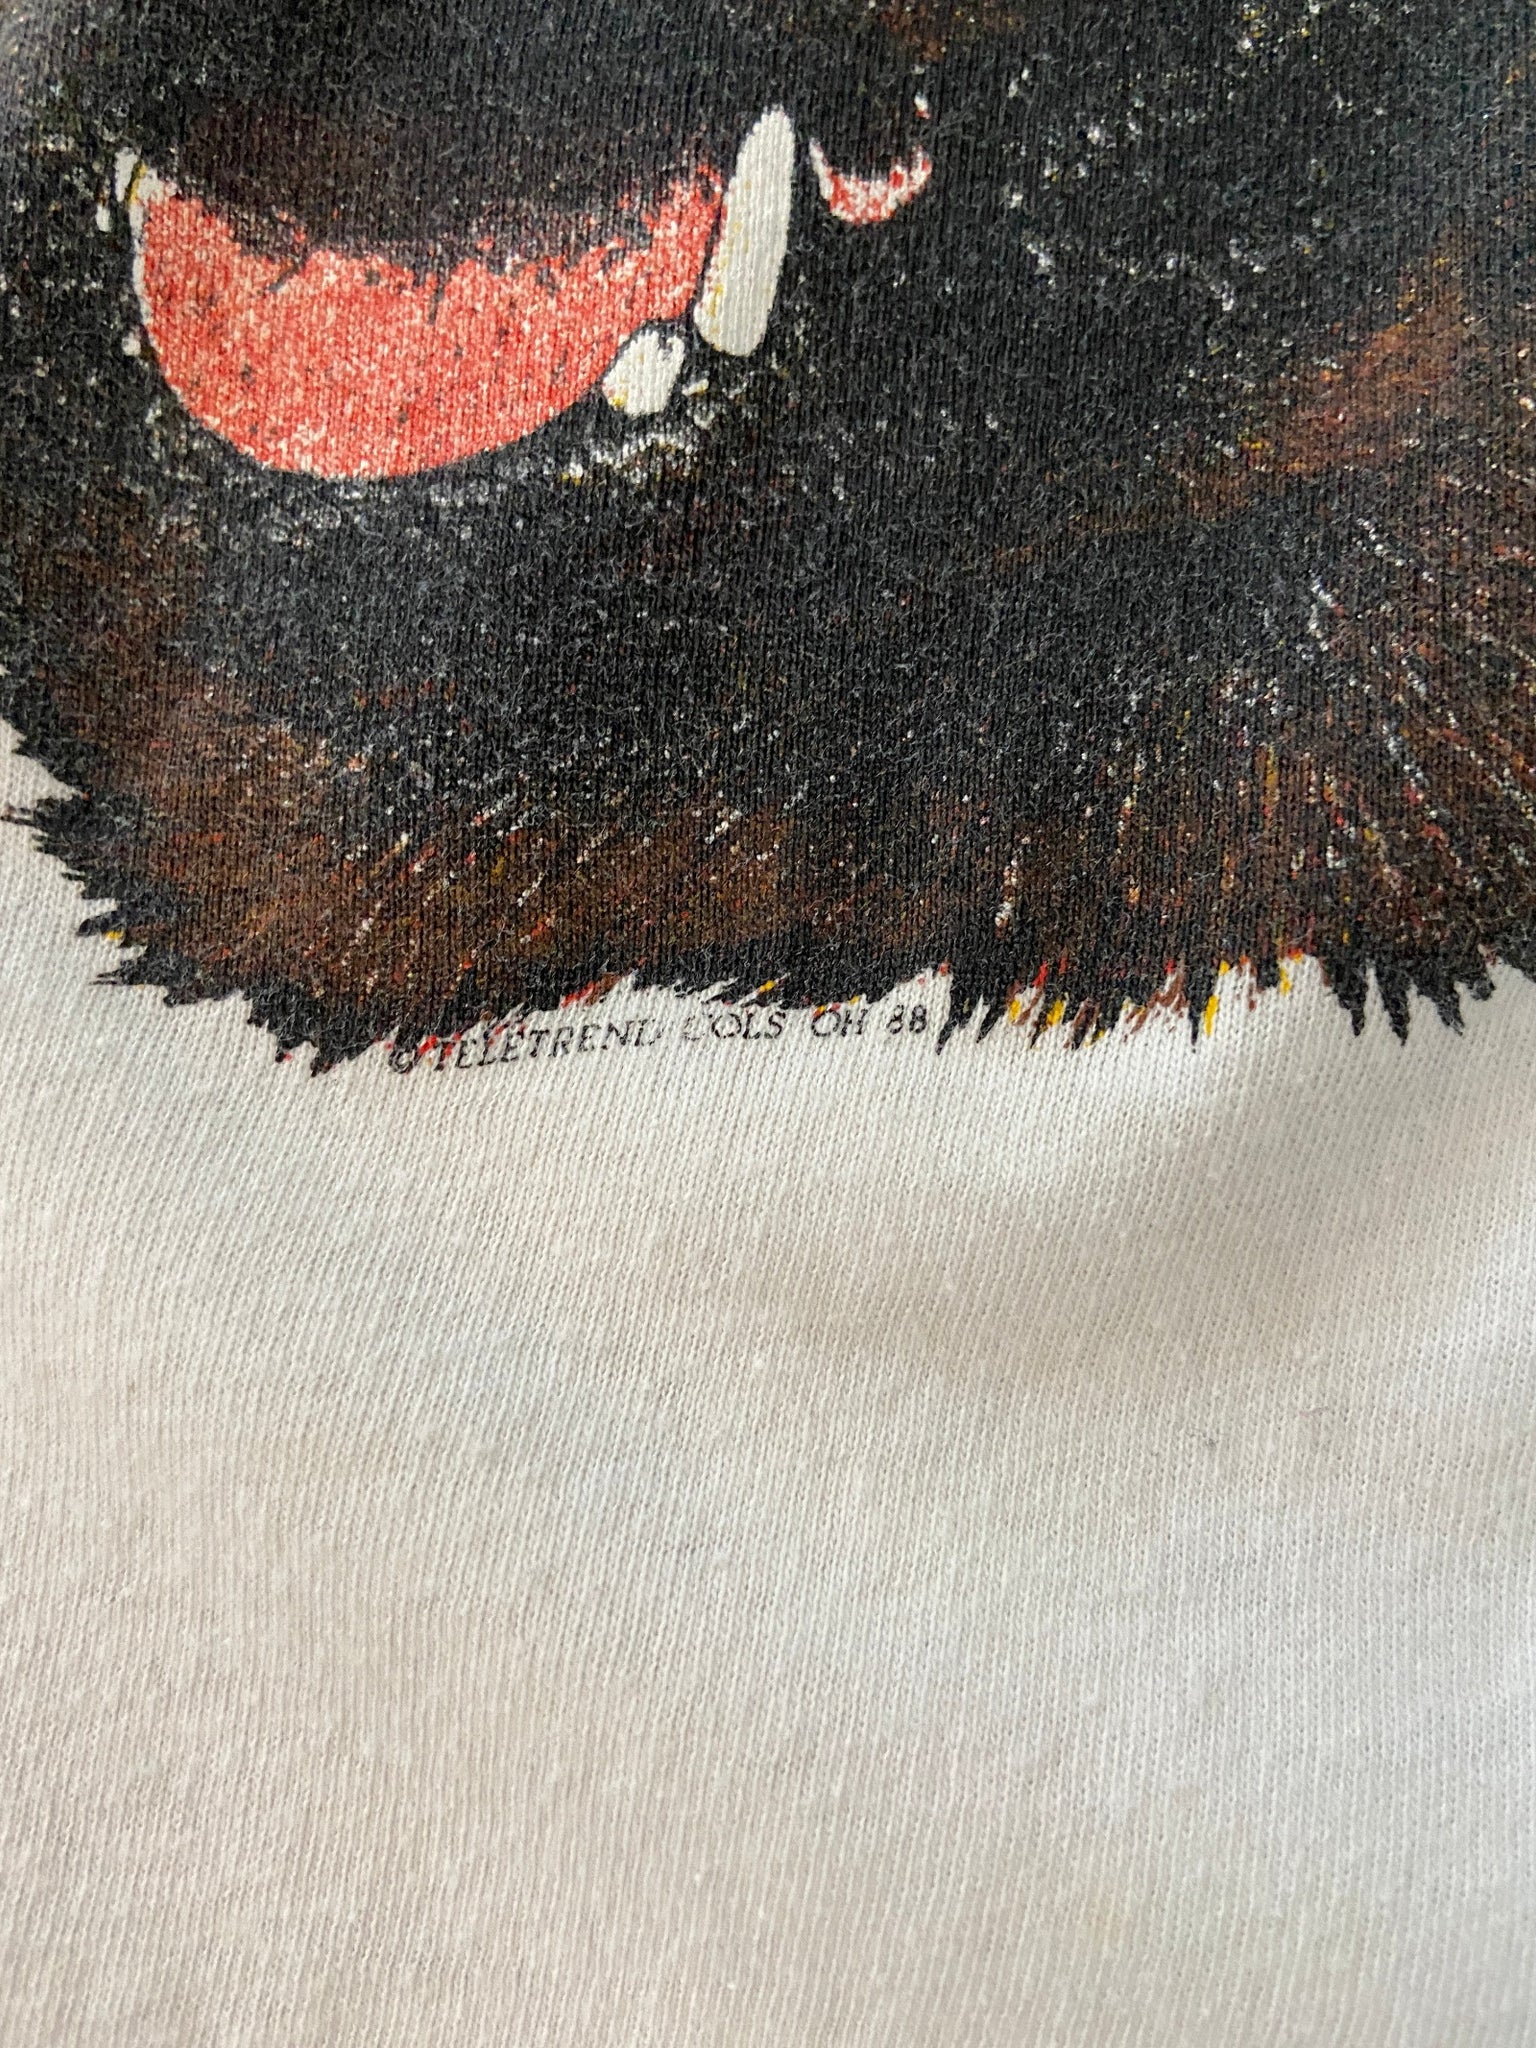 1988 Rottweiler T-shirt - XL